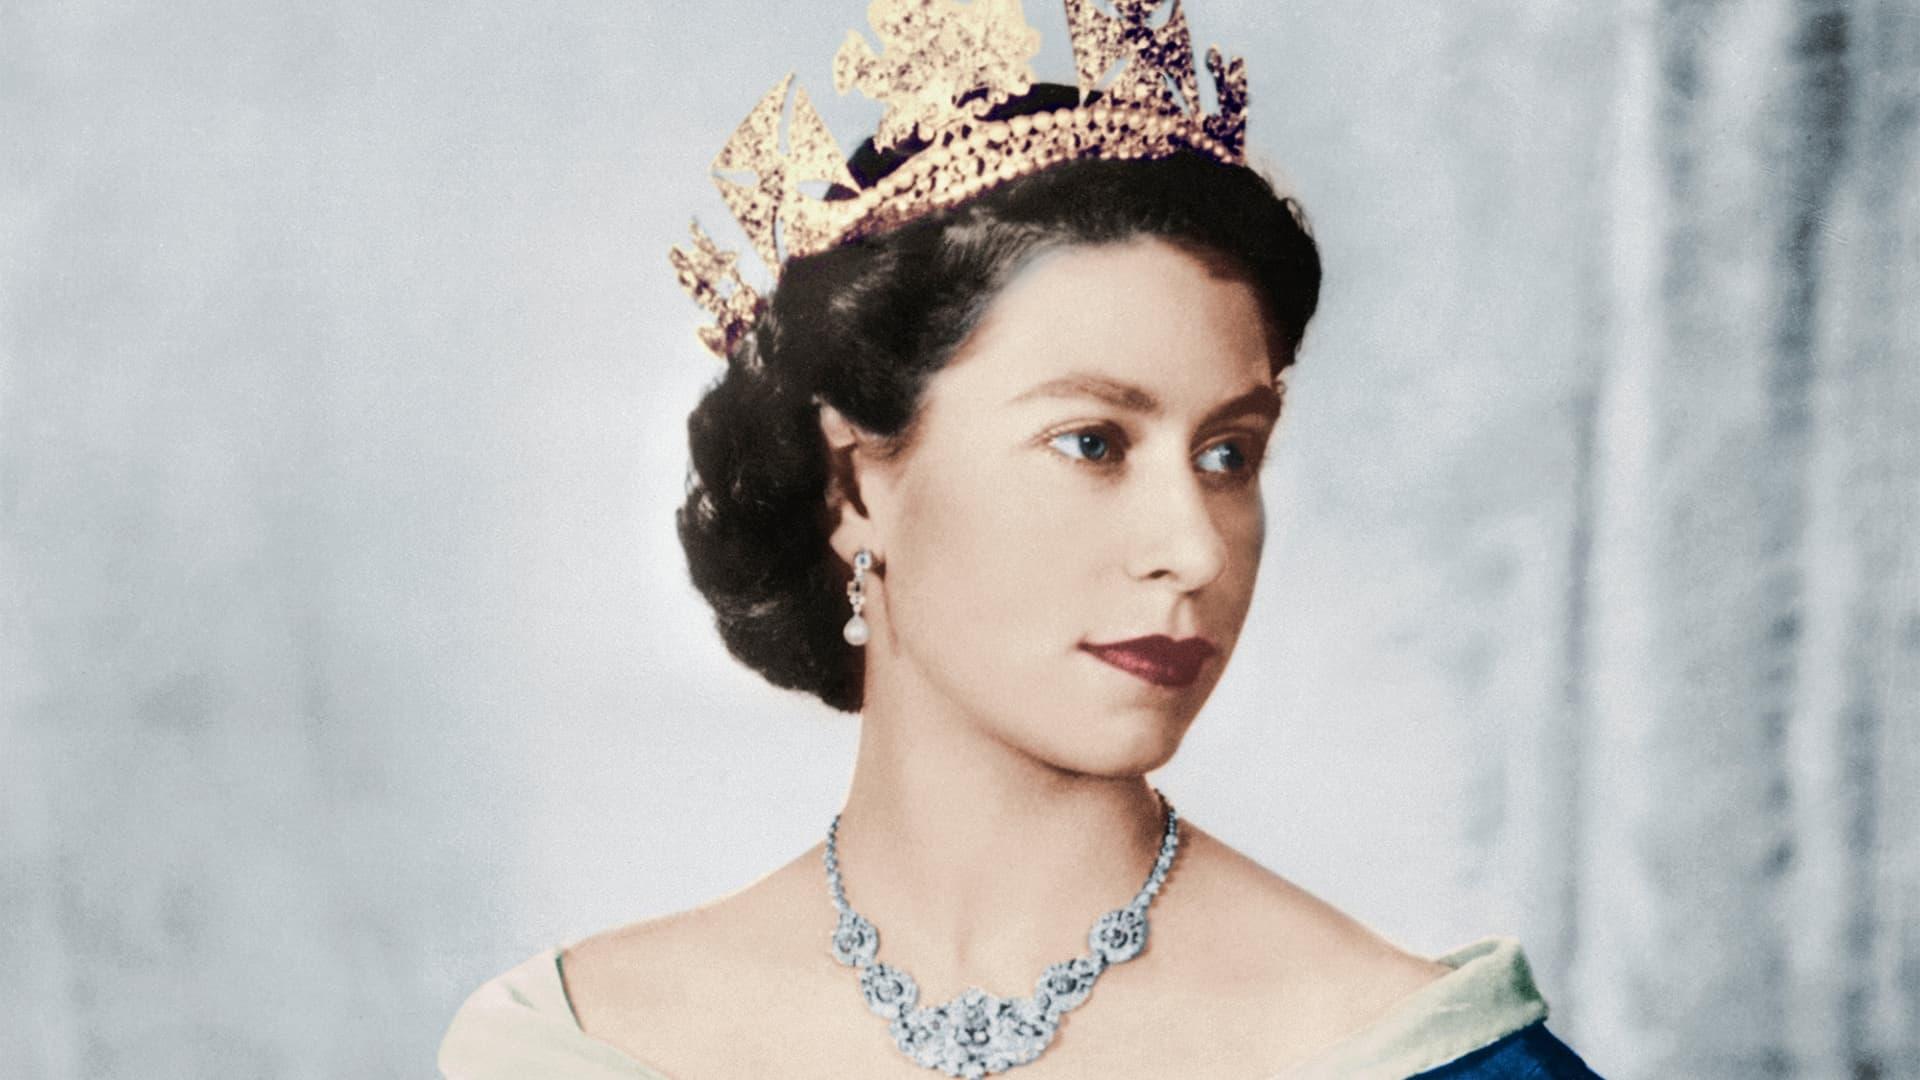 The Queen's Platinum Jubilee backdrop